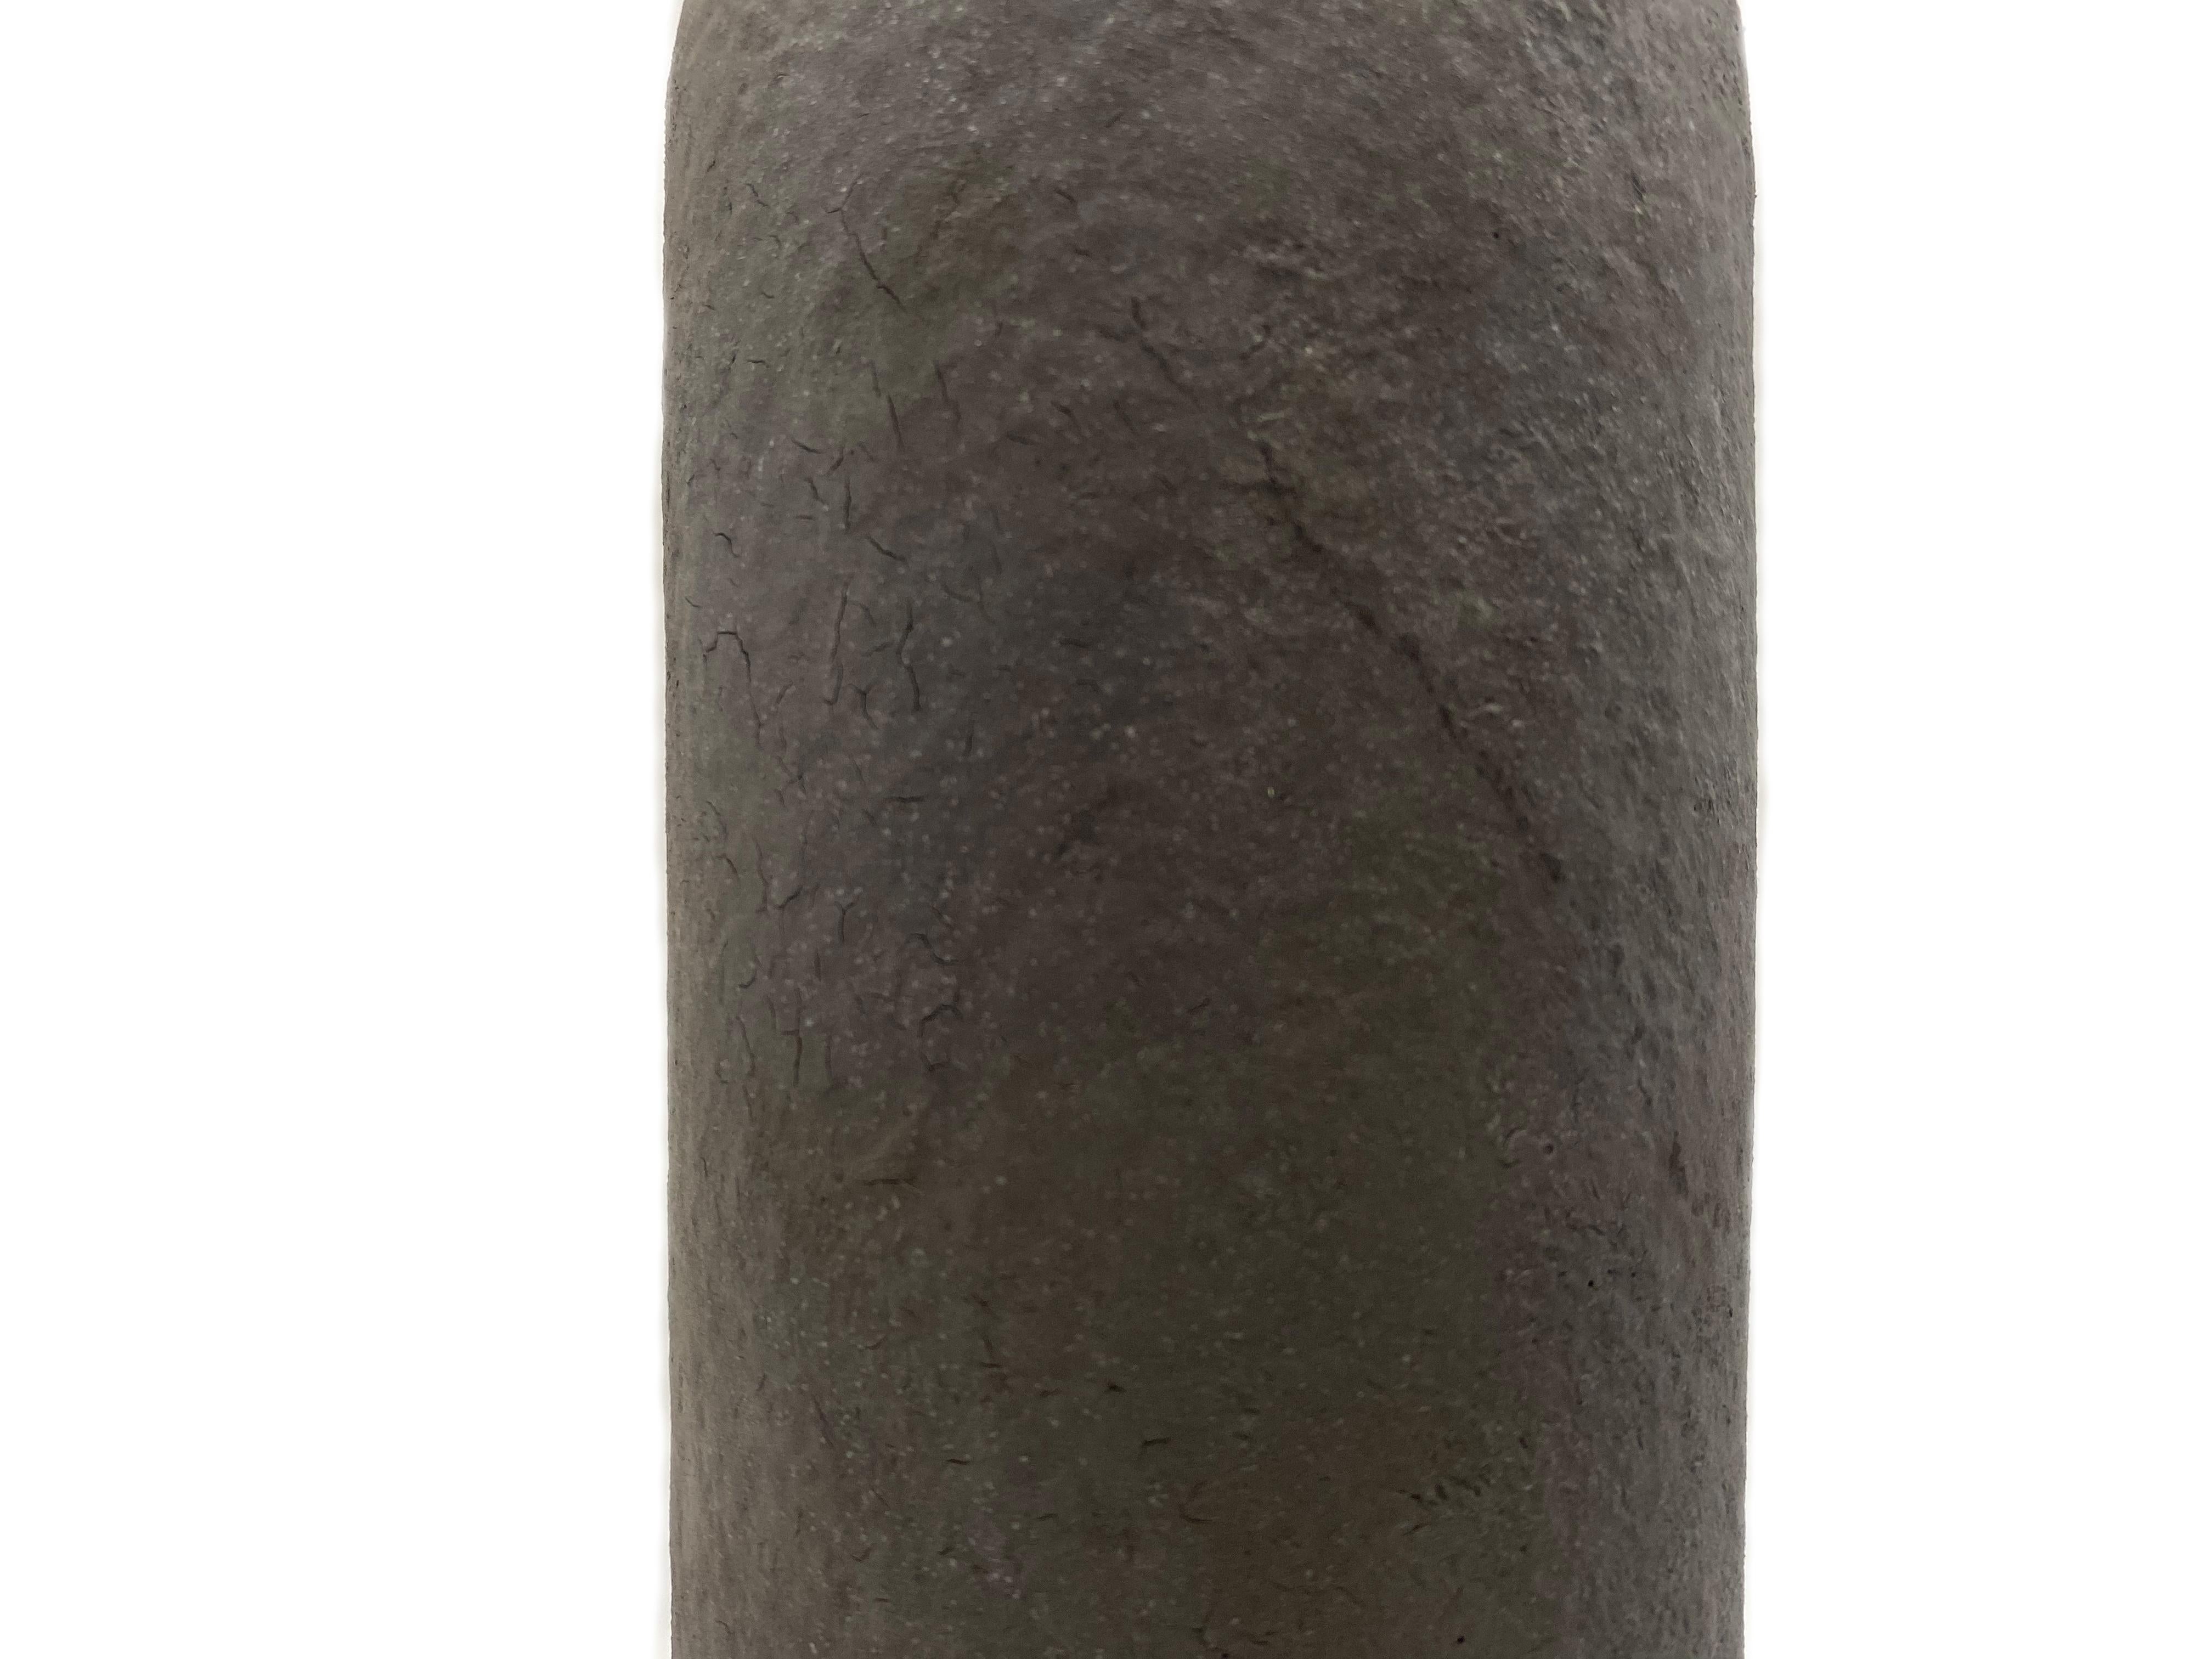 Vase en céramique émaillée selon la technique Raku de Jean François Reboul.

Jean-François Reboul est un sculpteur né en 1952 à Toulon.

Il est diplômé de l'École des Beaux-Arts d'Avignon. Depuis sa première exposition individuelle en 1980 à la